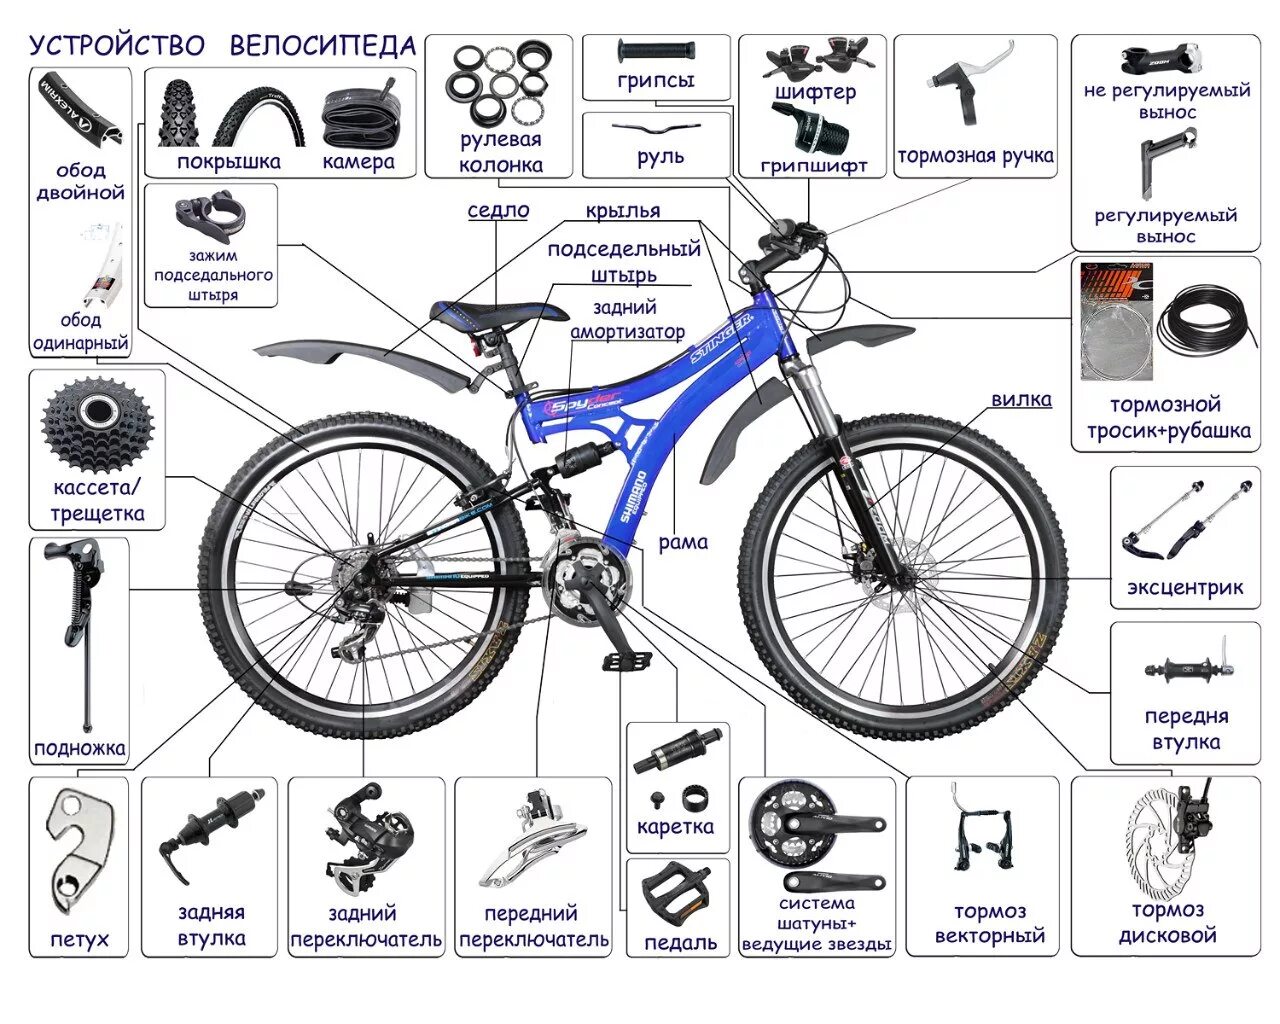 Схема велосипеда с названием деталей стелс. Строение горного велосипеда схема. Скоростной велосипед стелс строение. Схема сборки скоростного велосипеда. Сборка велосипеда ridelite